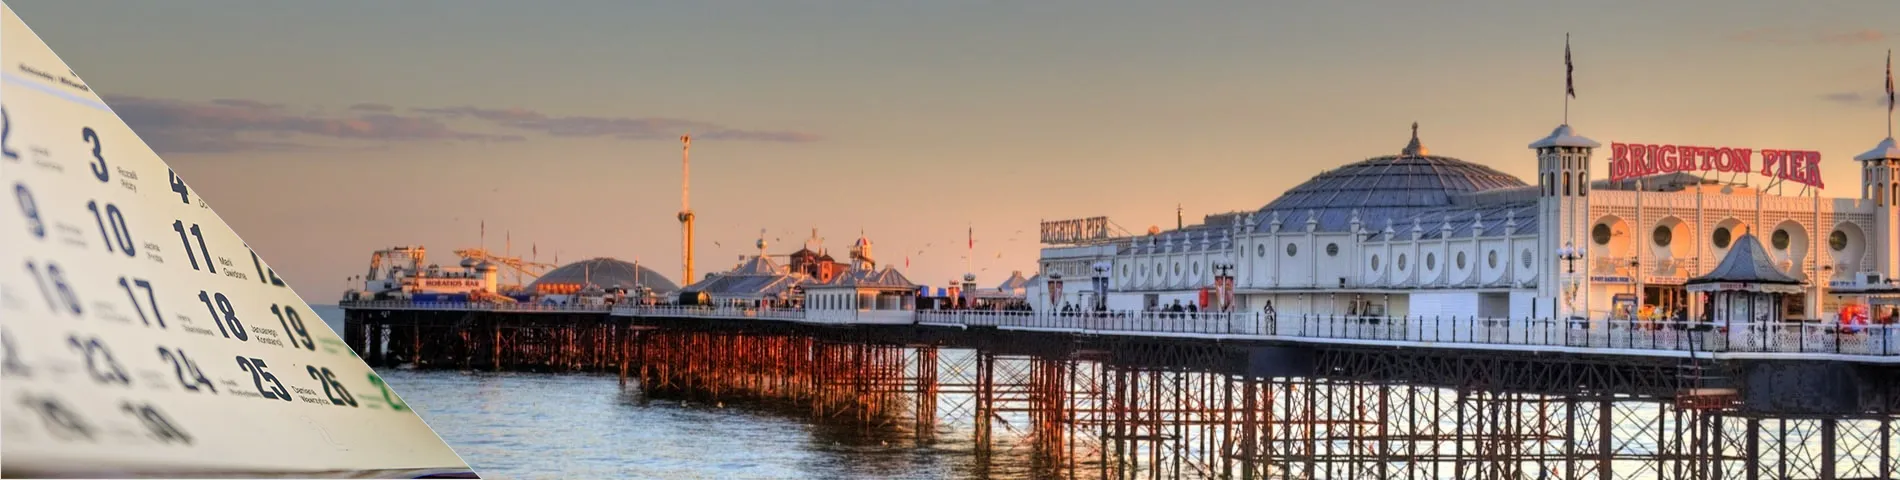 Brighton - Inglese annuale 